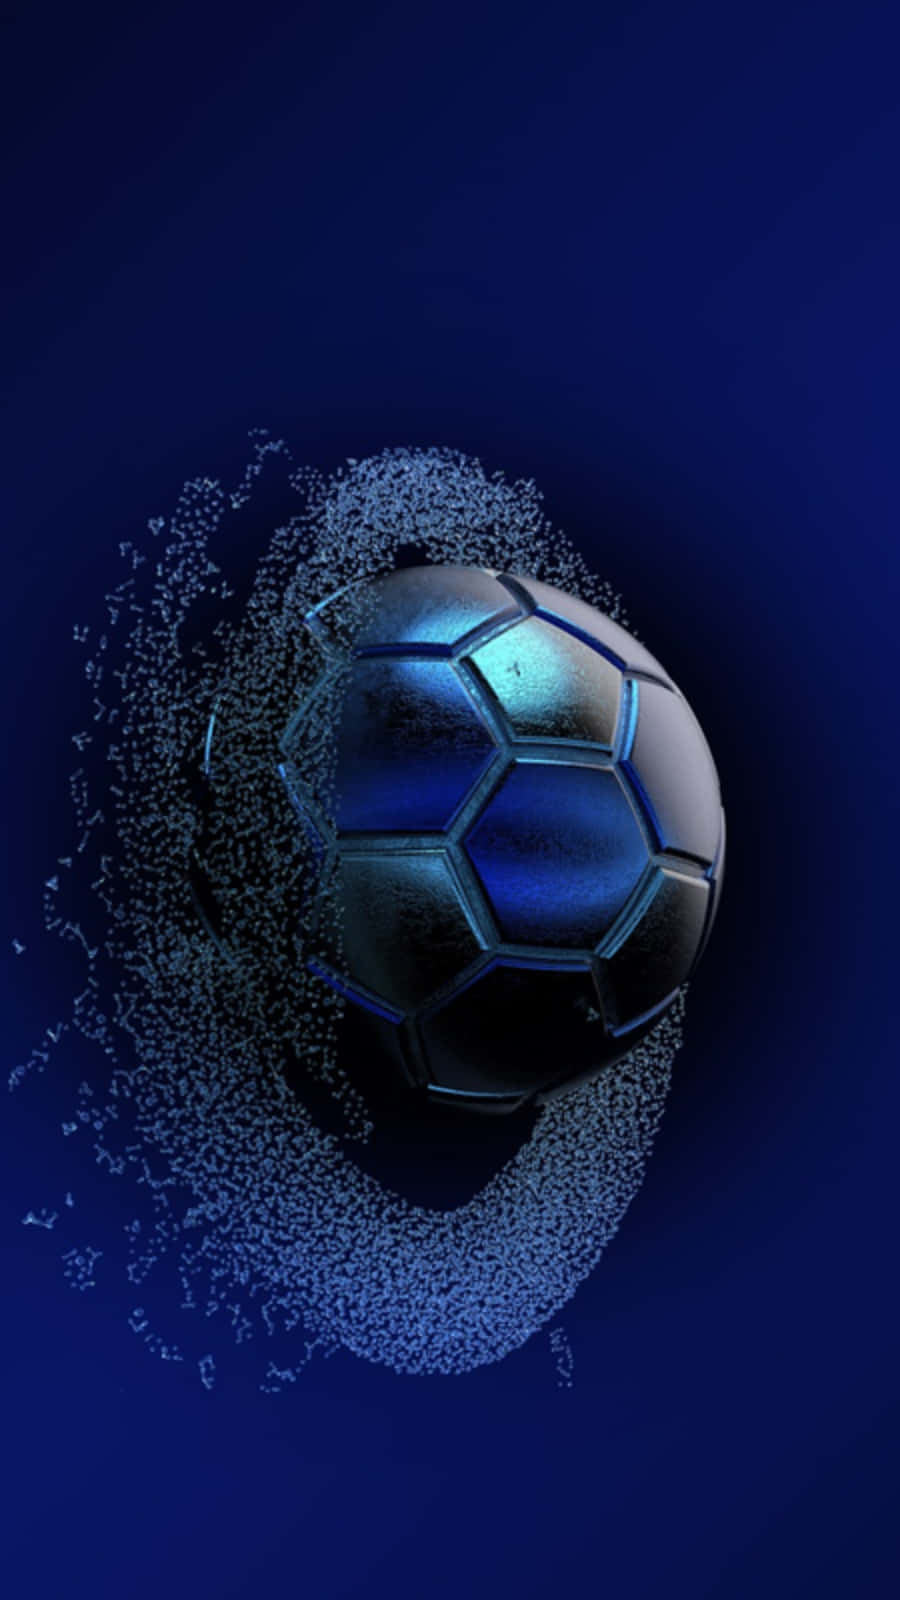 Imagende Una Pelota De Fútbol Azul